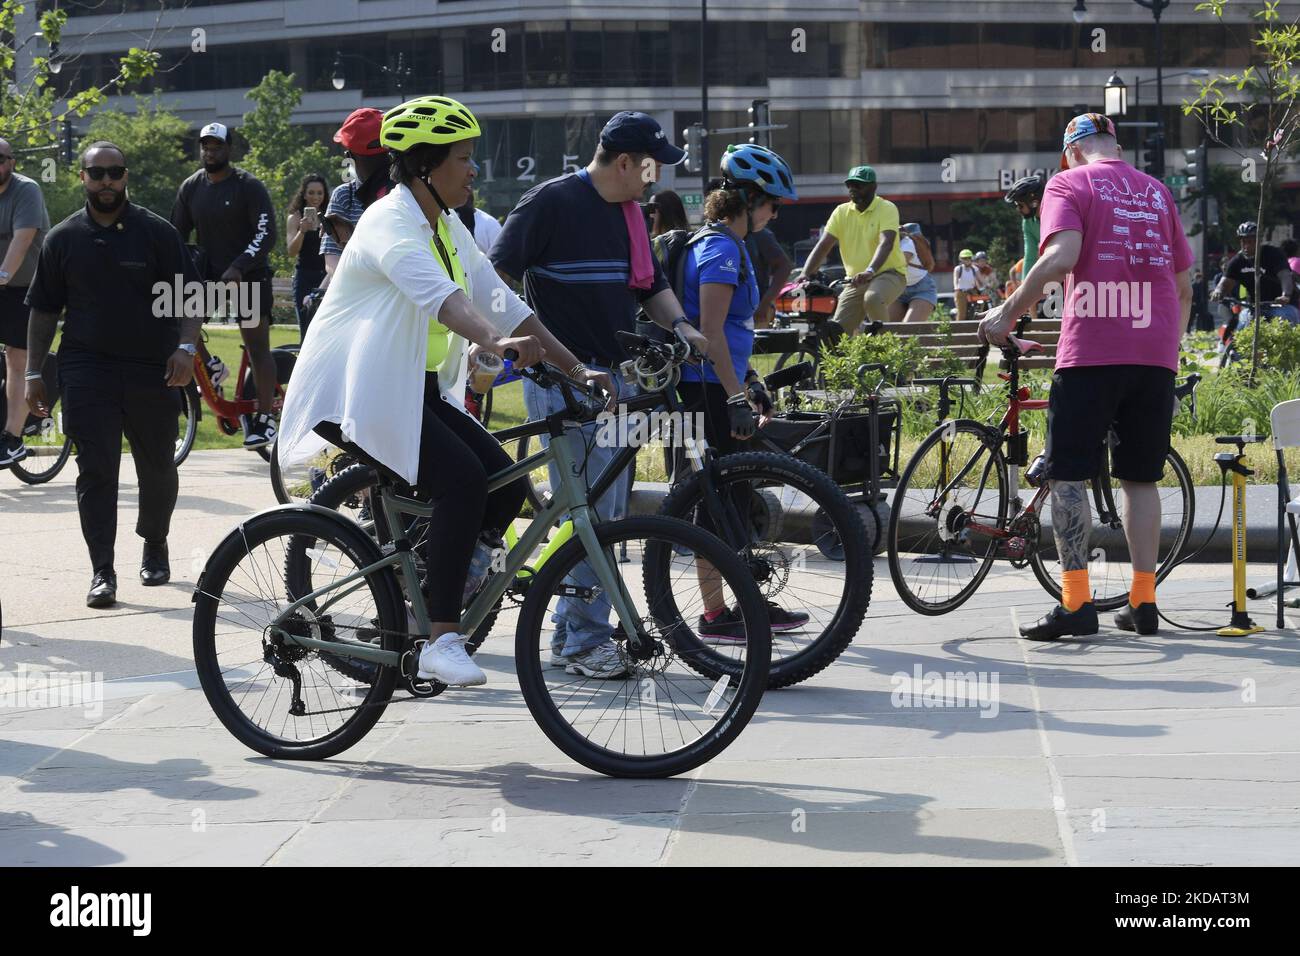 Il sindaco DC Muriel Bowser arriva in bicicletta durante l'evento Bike to Work Day, oggi il 25 febbraio 2021 a HVC/Capitol Hill a Washington DC, USA. (Foto di Lenin Nolly/NurPhoto) Foto Stock